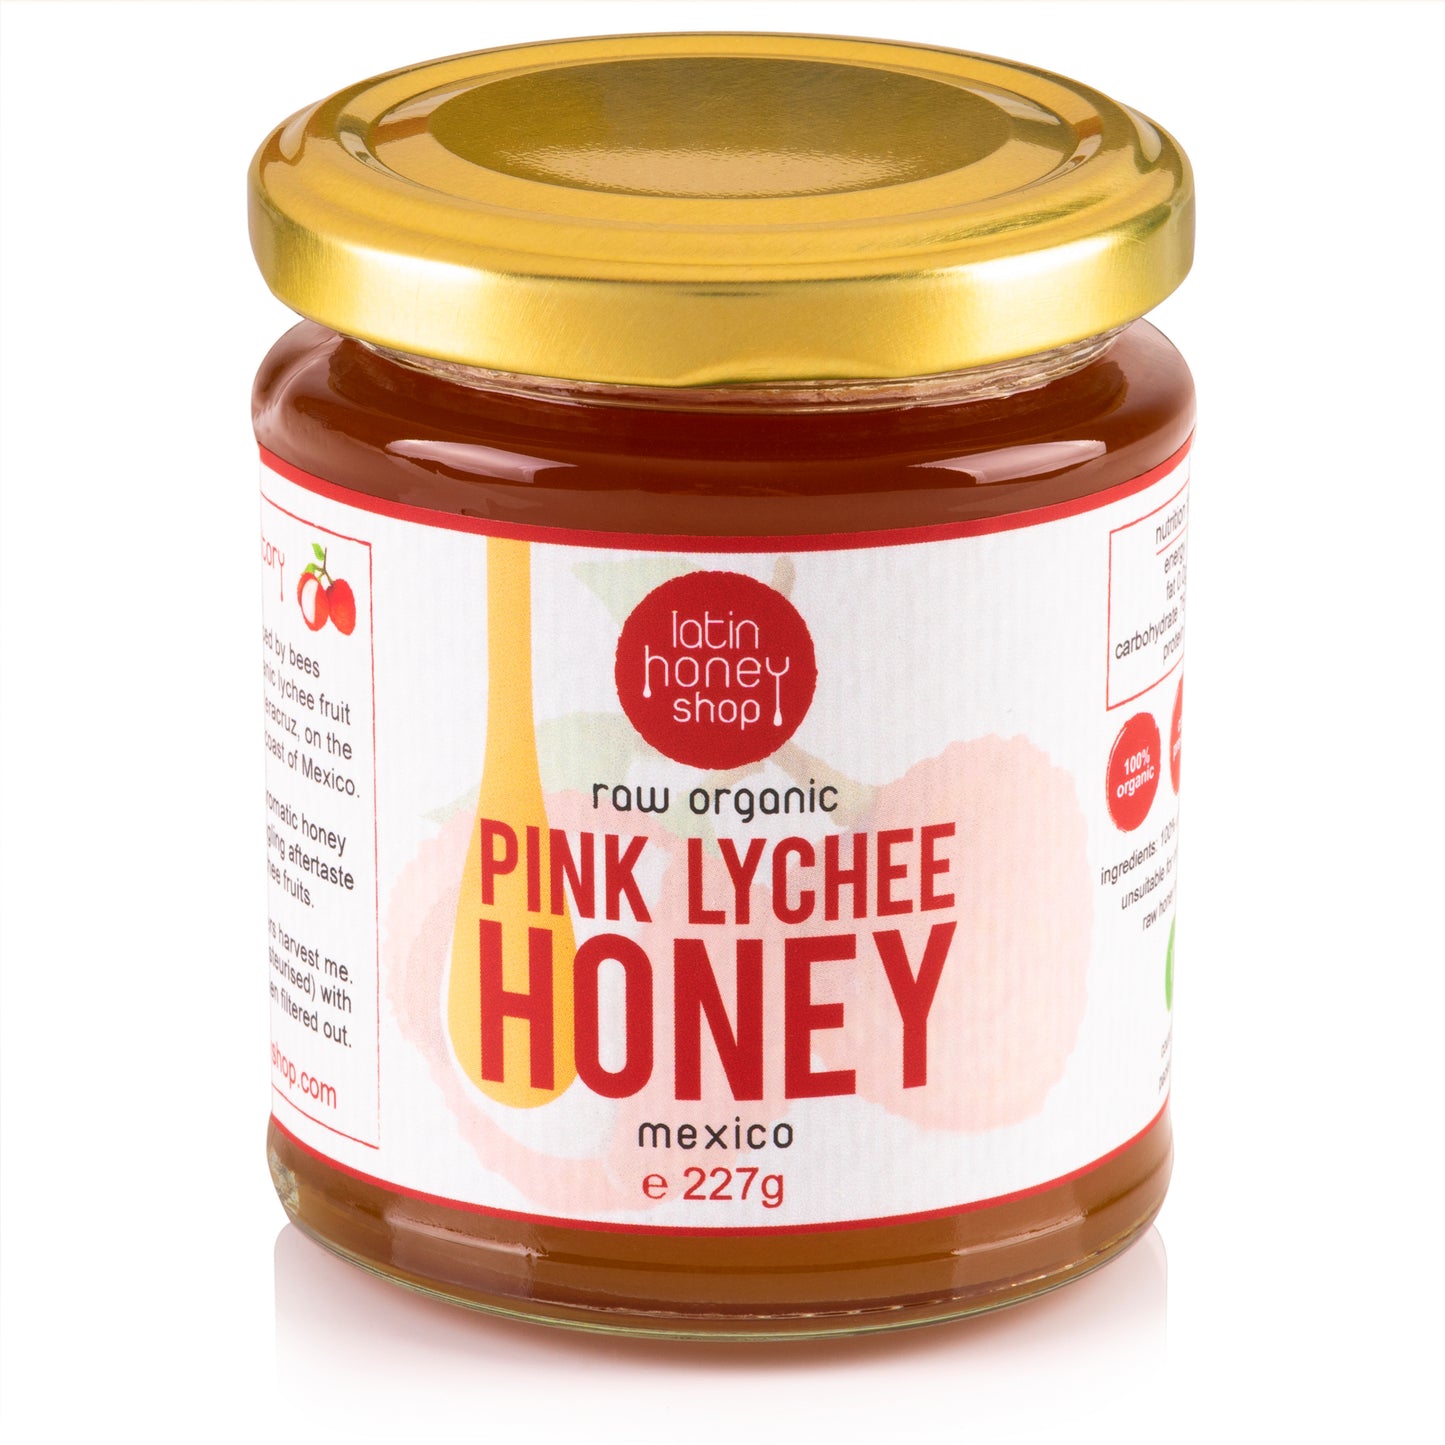 Rå økologisk pink litchihonning fra mexico 227g latinsk honningbutik 